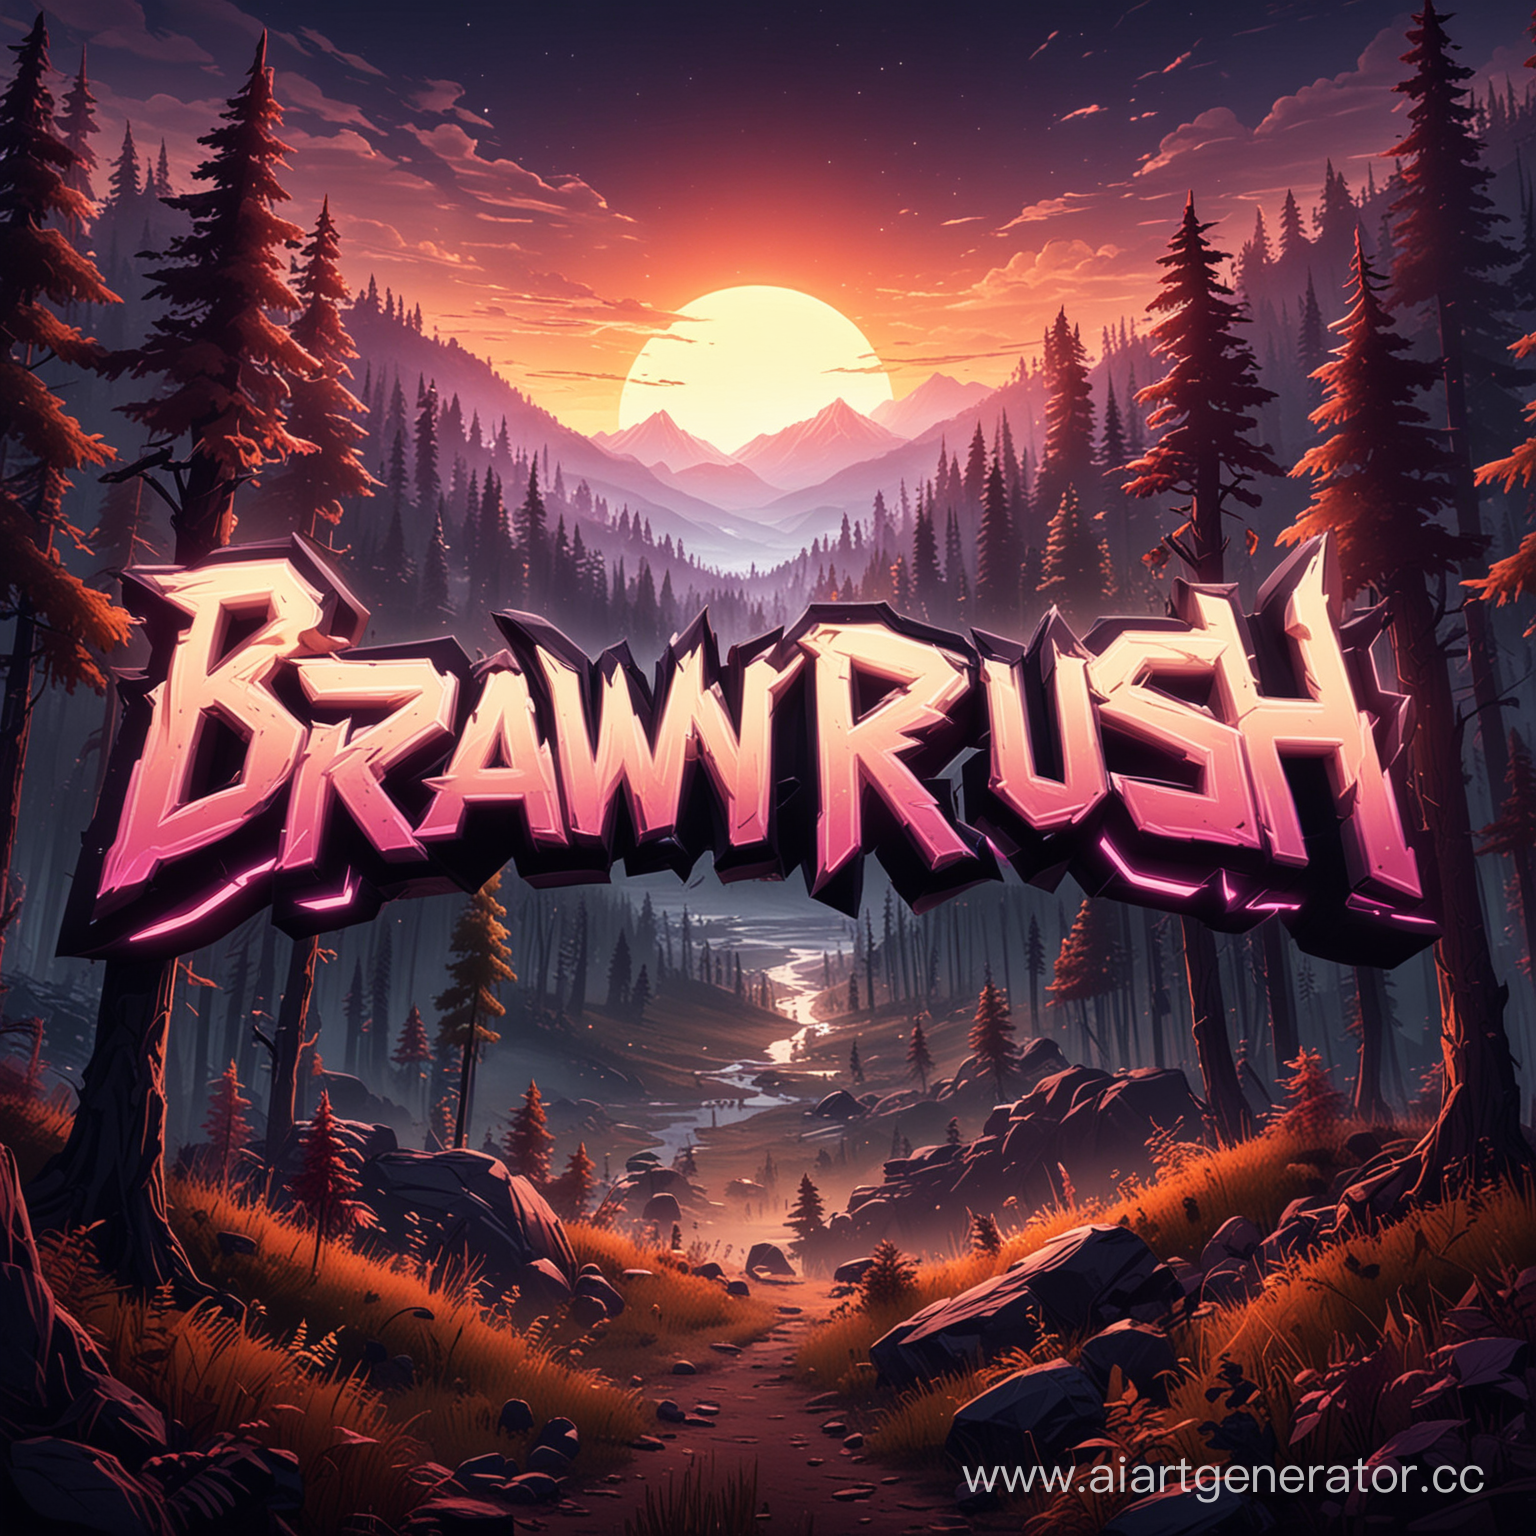 скромный, но светящийся неоном ночью логотип сайта "BRAWLRUSH" в лесу, на фоне гор